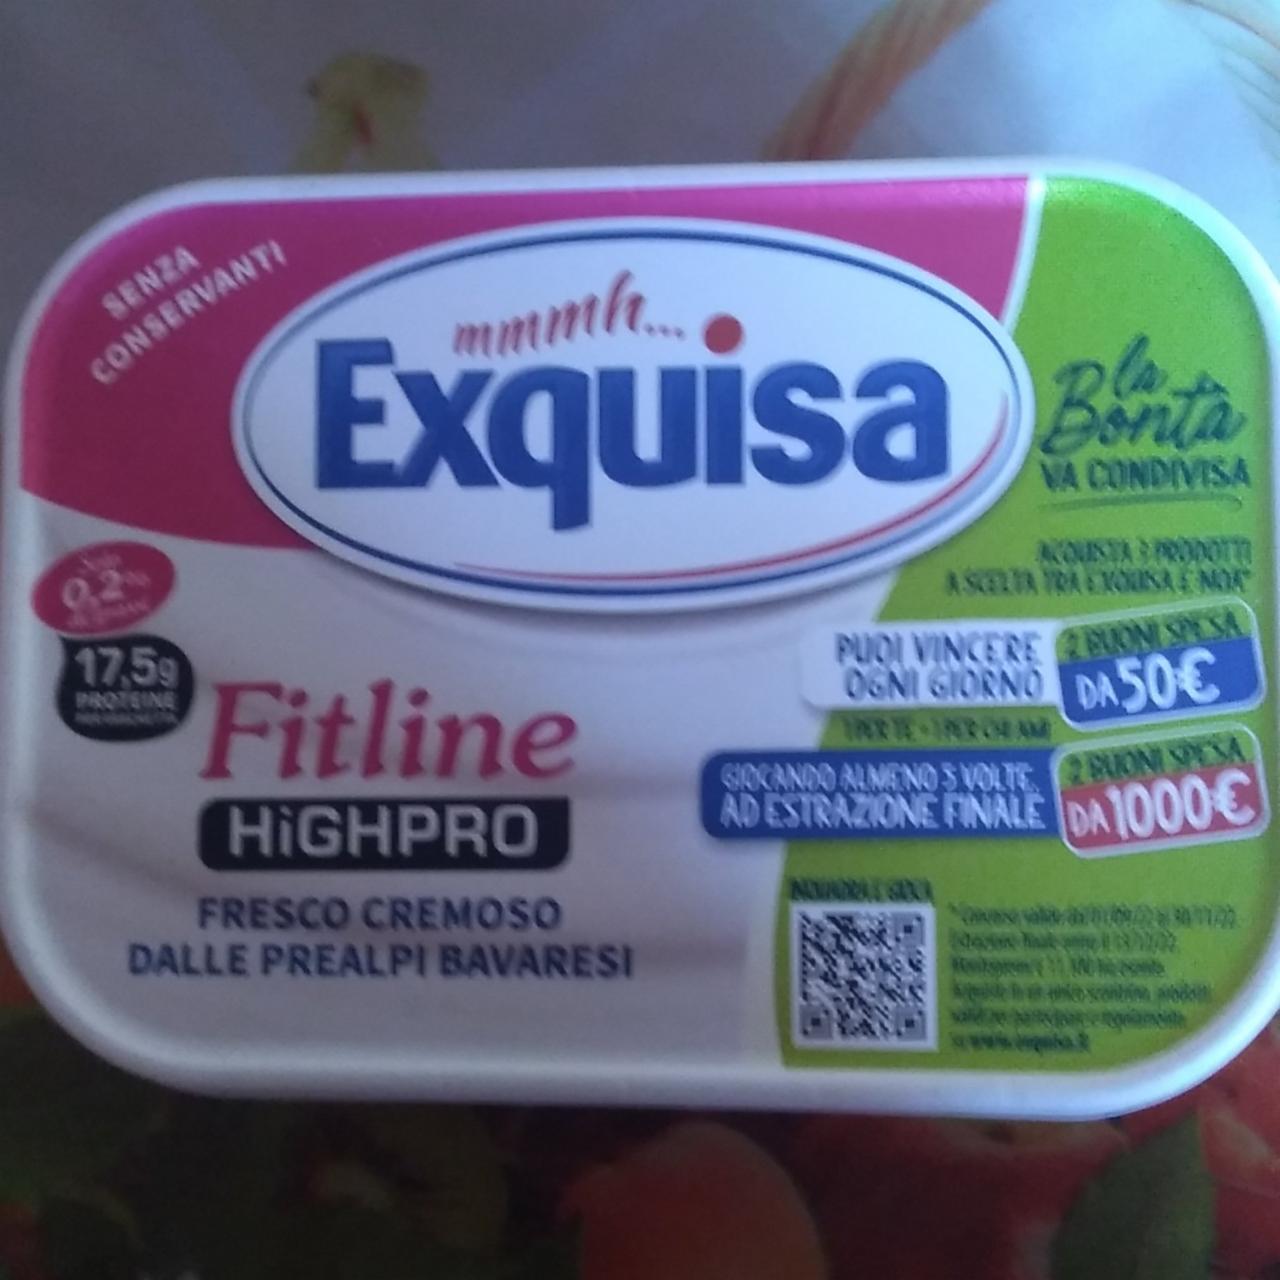 Фото - Крем-сыр с высоким содержанием белка Exquisa Fitline